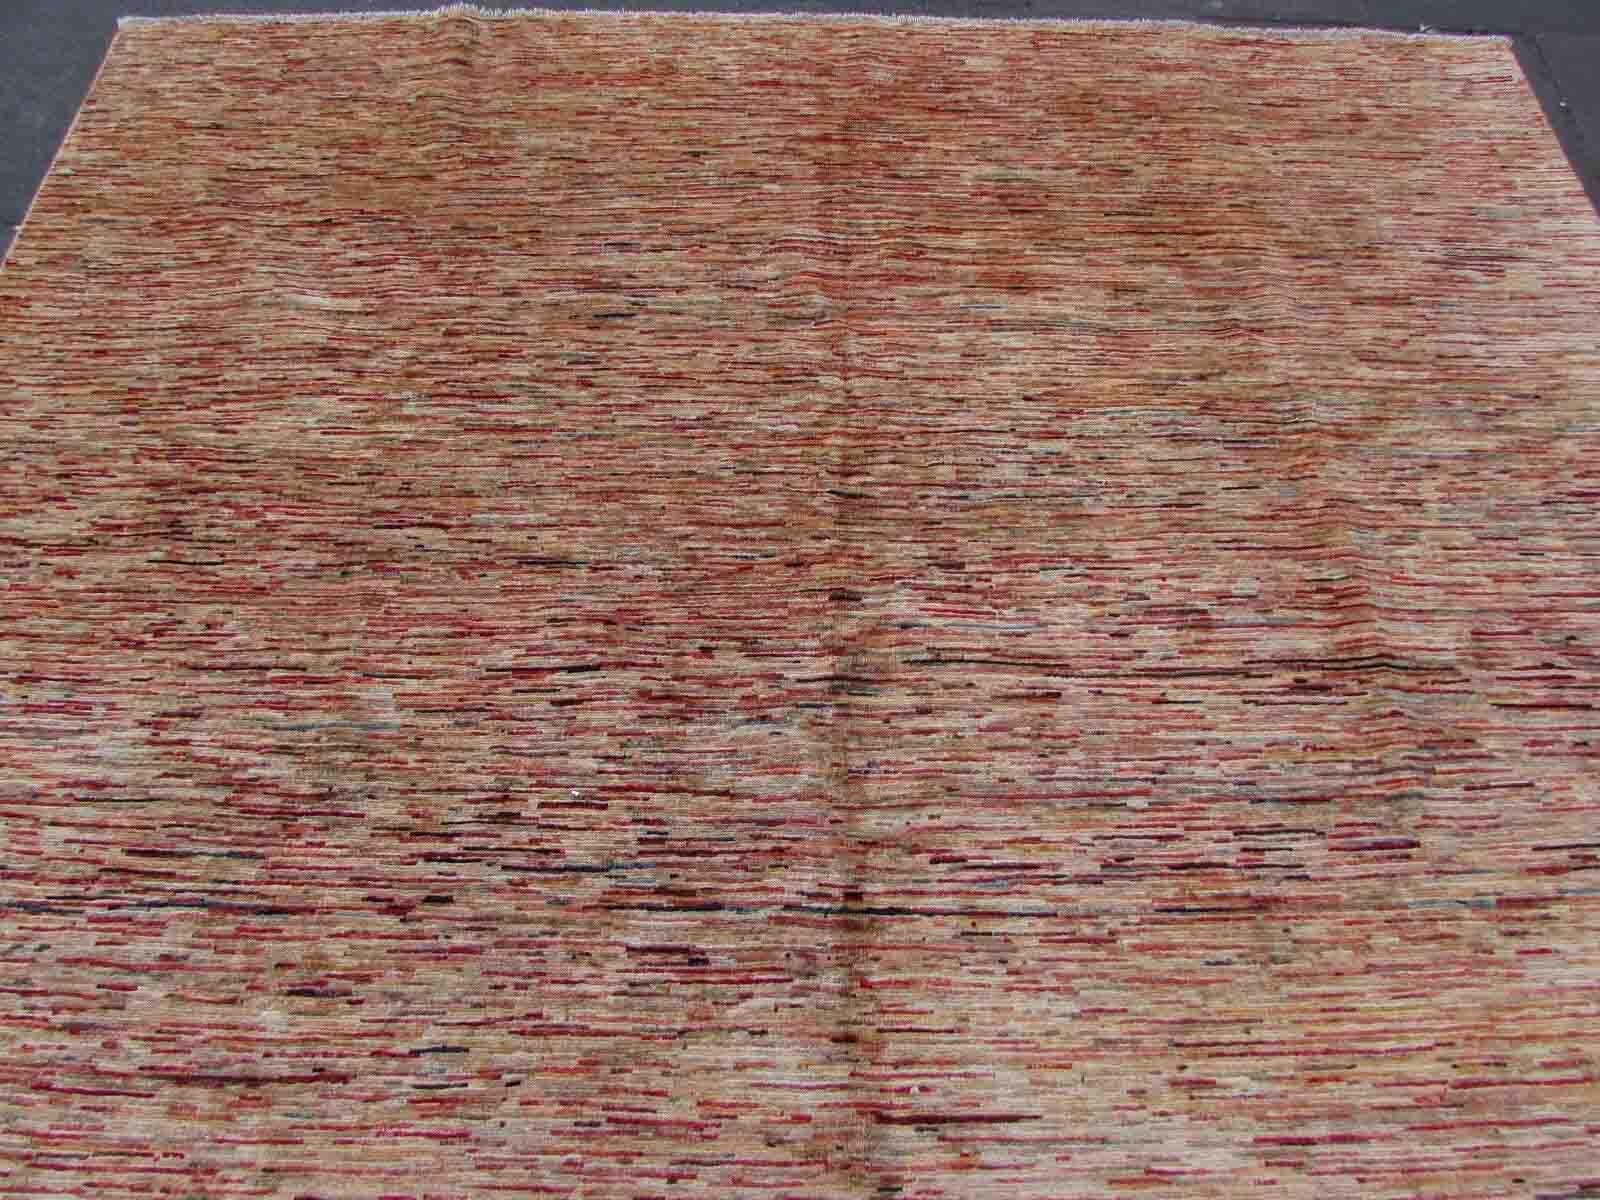 Handgefertigter Gabbeh-Teppich in Brauntönen mit bunten Linien. Der Teppich stammt aus dem Ende des 20. Jahrhunderts und ist in gutem Originalzustand.

-Zustand: original gut, 

-Umgebung: 1970er Jahre,

-Größe: 8' x 9.4' (245cm x